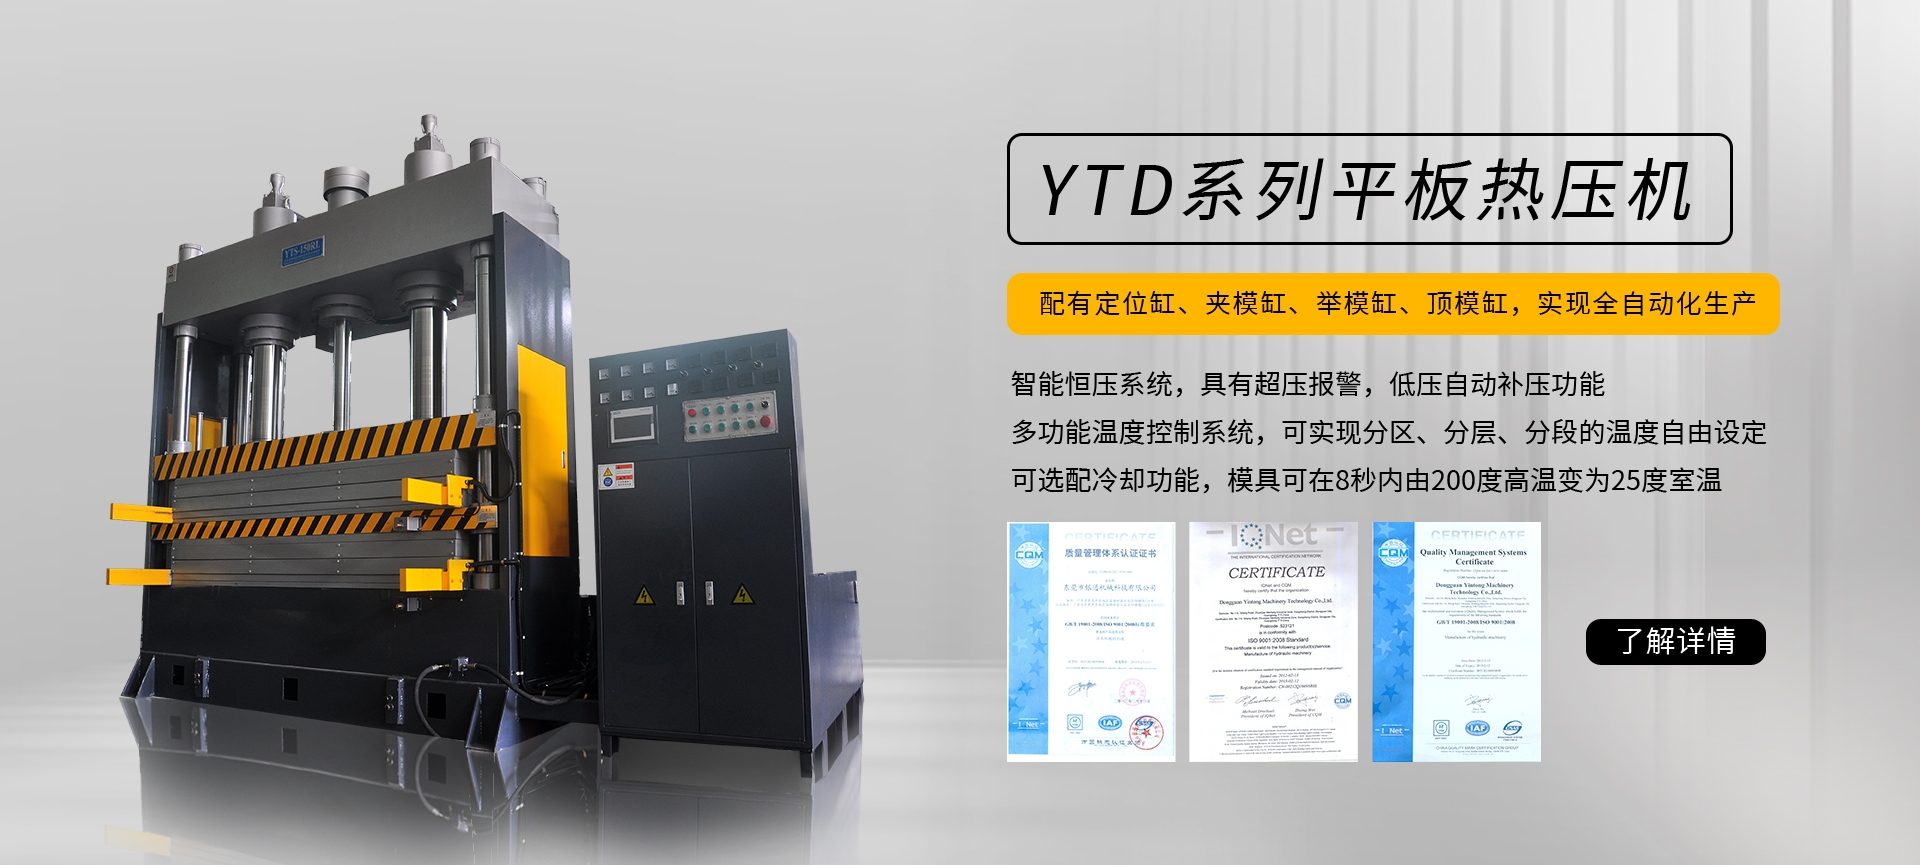 YT-RS系列熱壓成型機